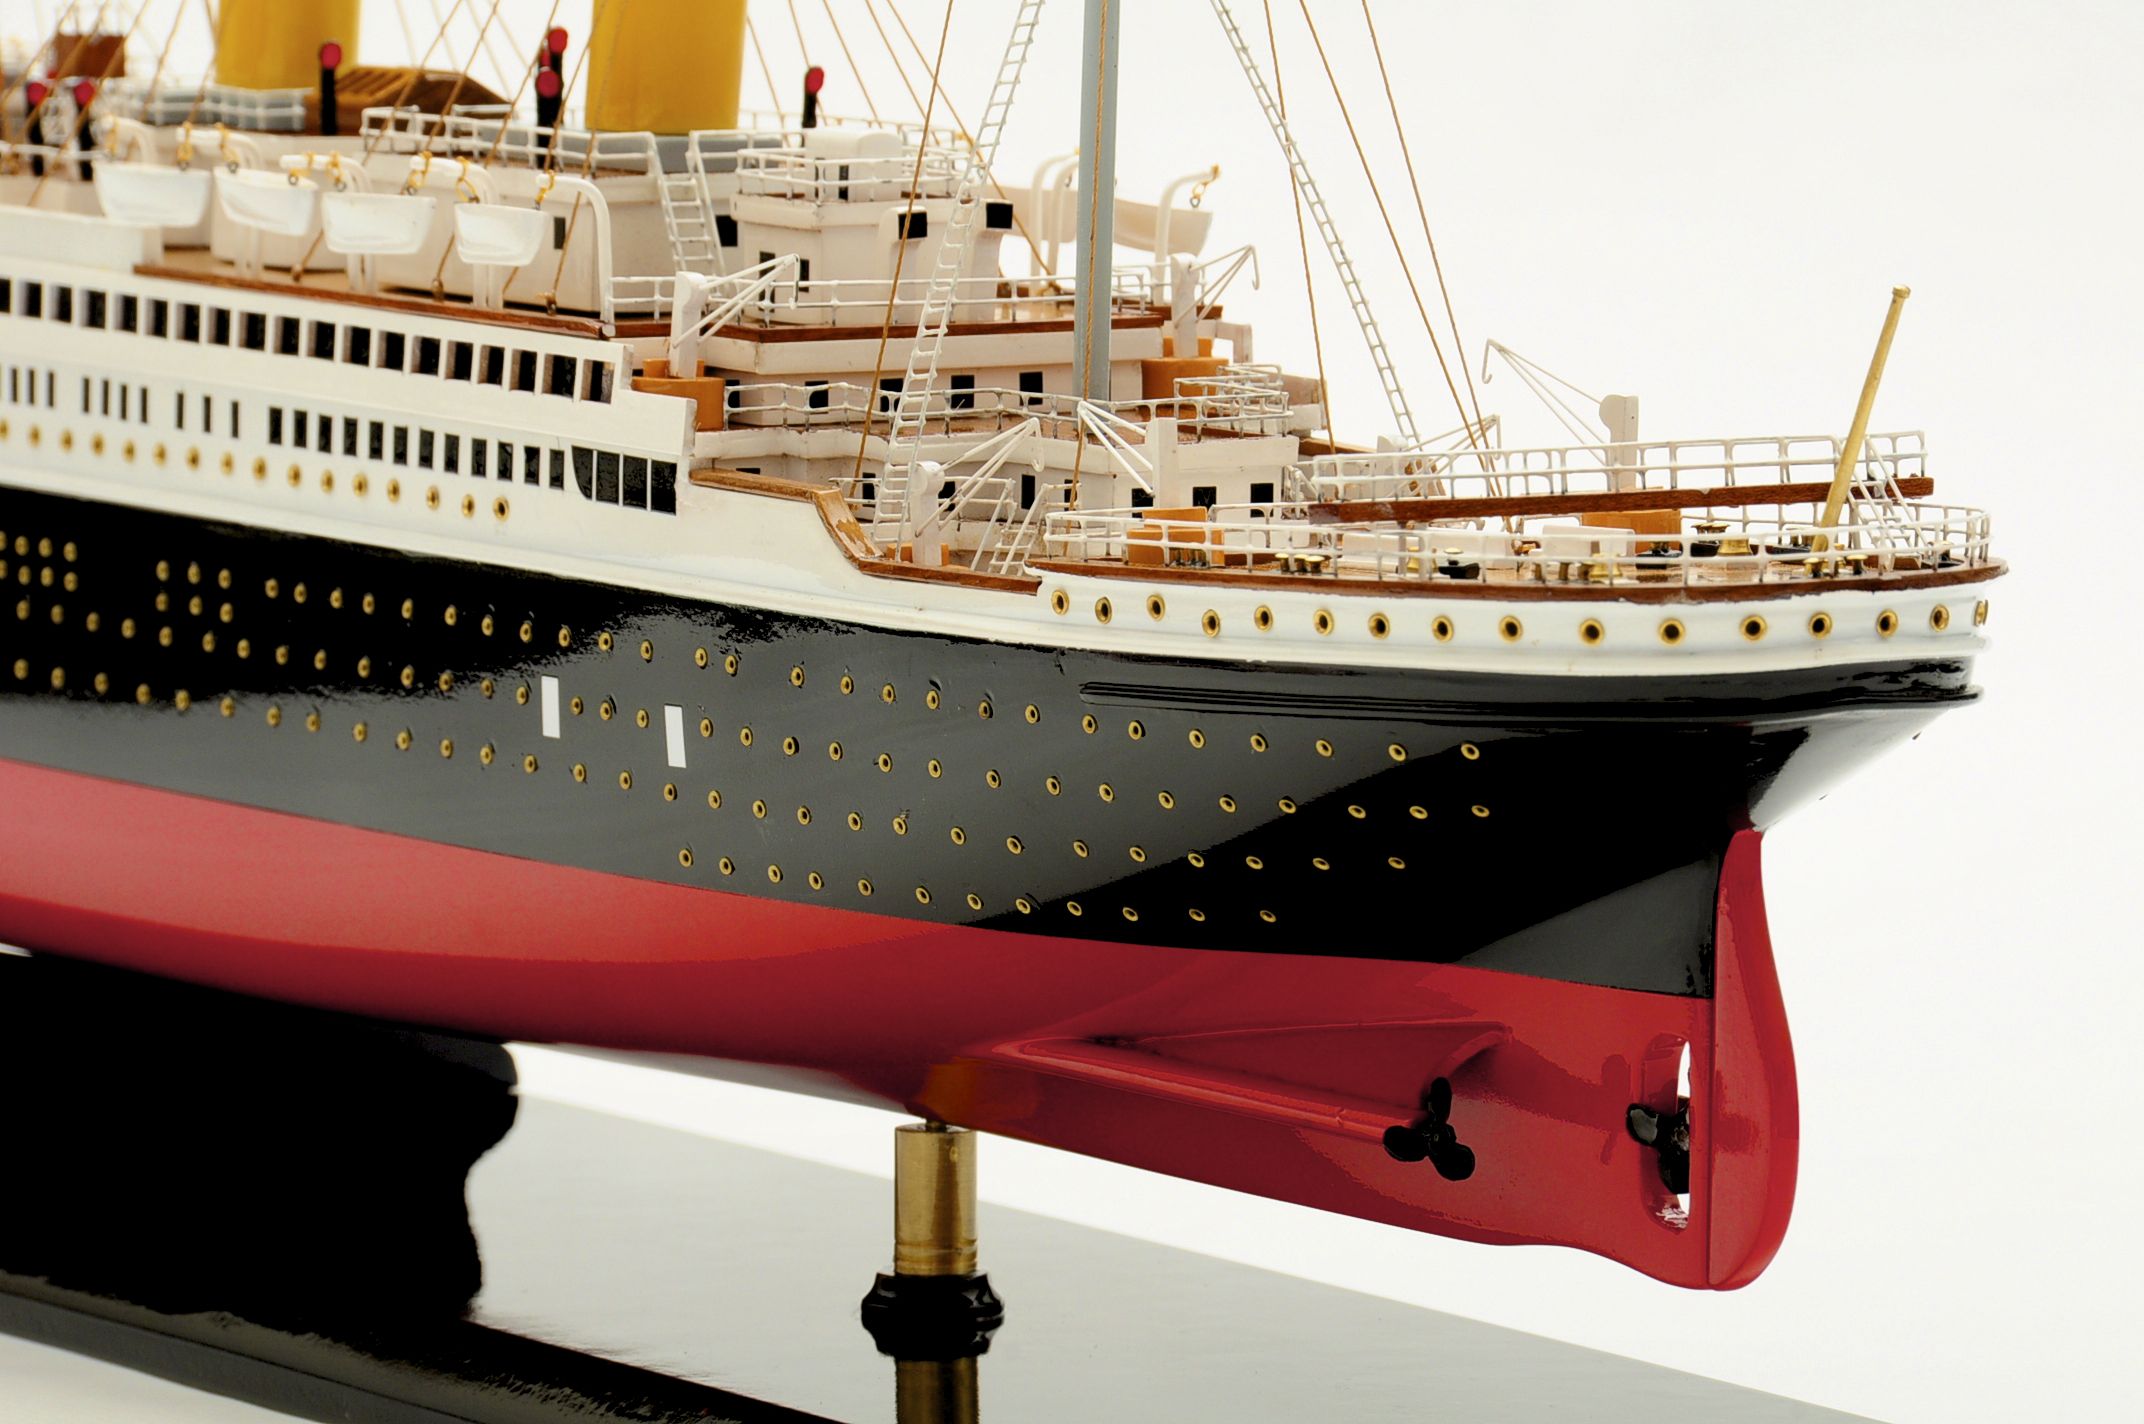 replica of the titanic cruise ship